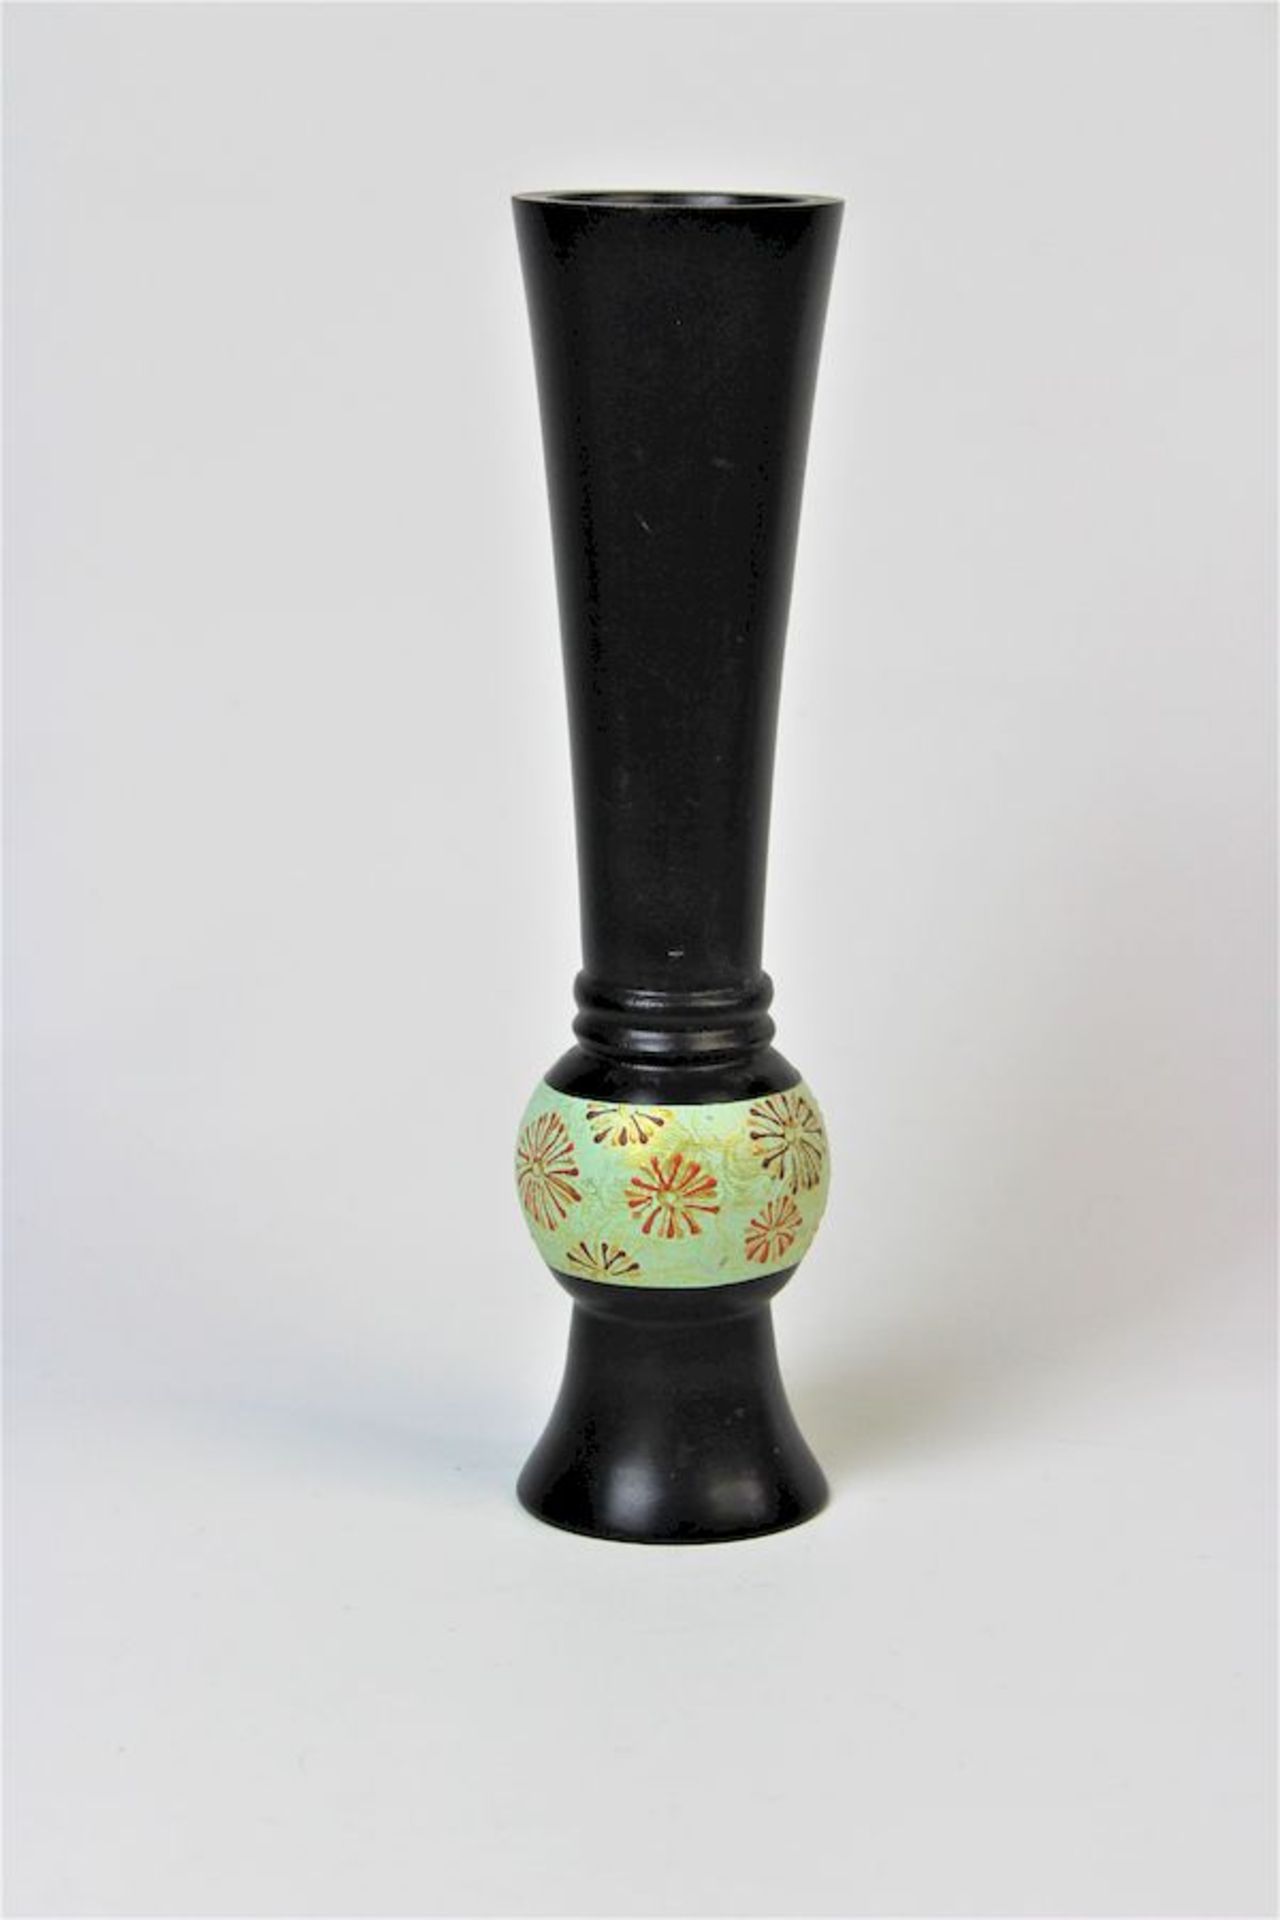 Stangen-Vase, Japan um 1900Holz gedrechselt schwarz lackiert mit umlaufenden Blumendekor Maße: ca.